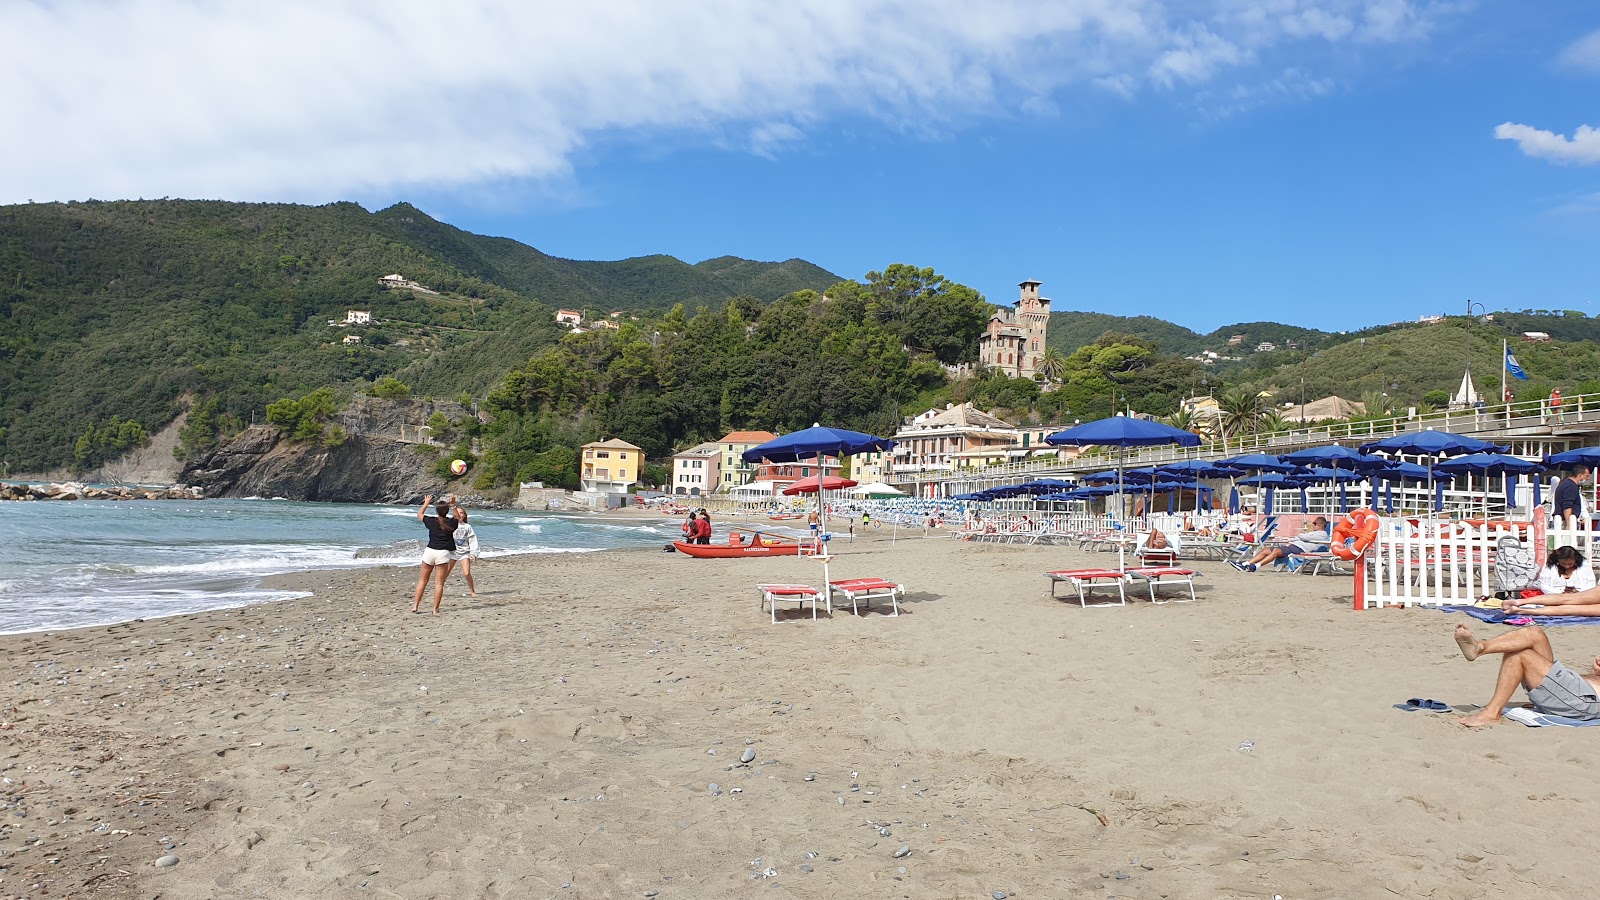 Spiaggia Moneglia'in fotoğrafı - Çocuklu aile gezginleri için önerilir